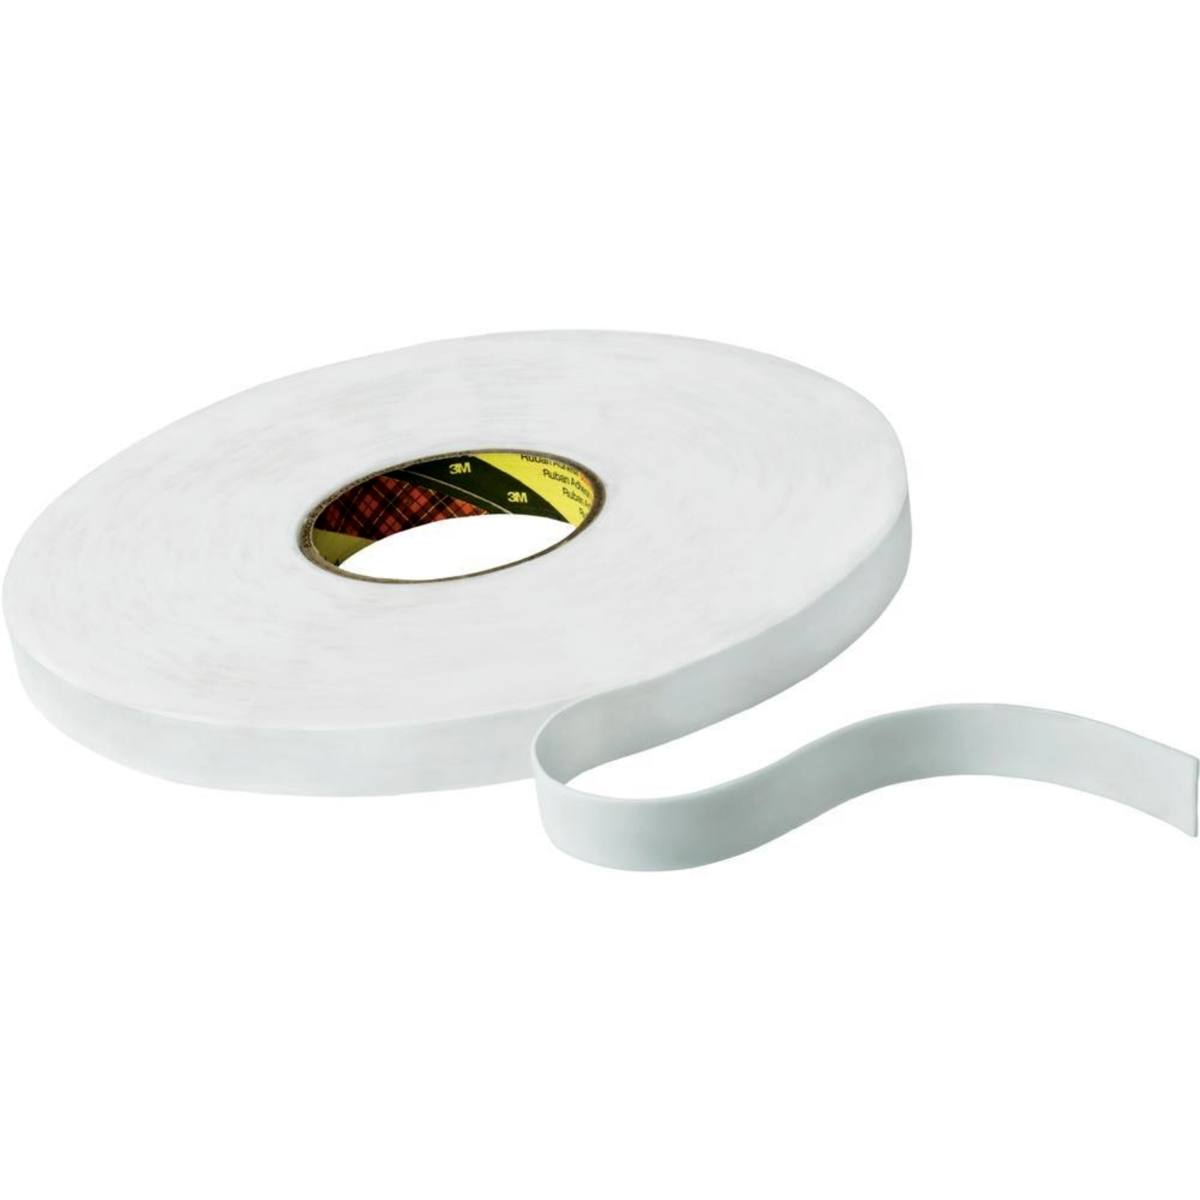 Cinta adhesiva de espuma de PE 3M con adhesivo de resina de caucho 9528, blanca, 6 mm x 66 m, 0,8 mm